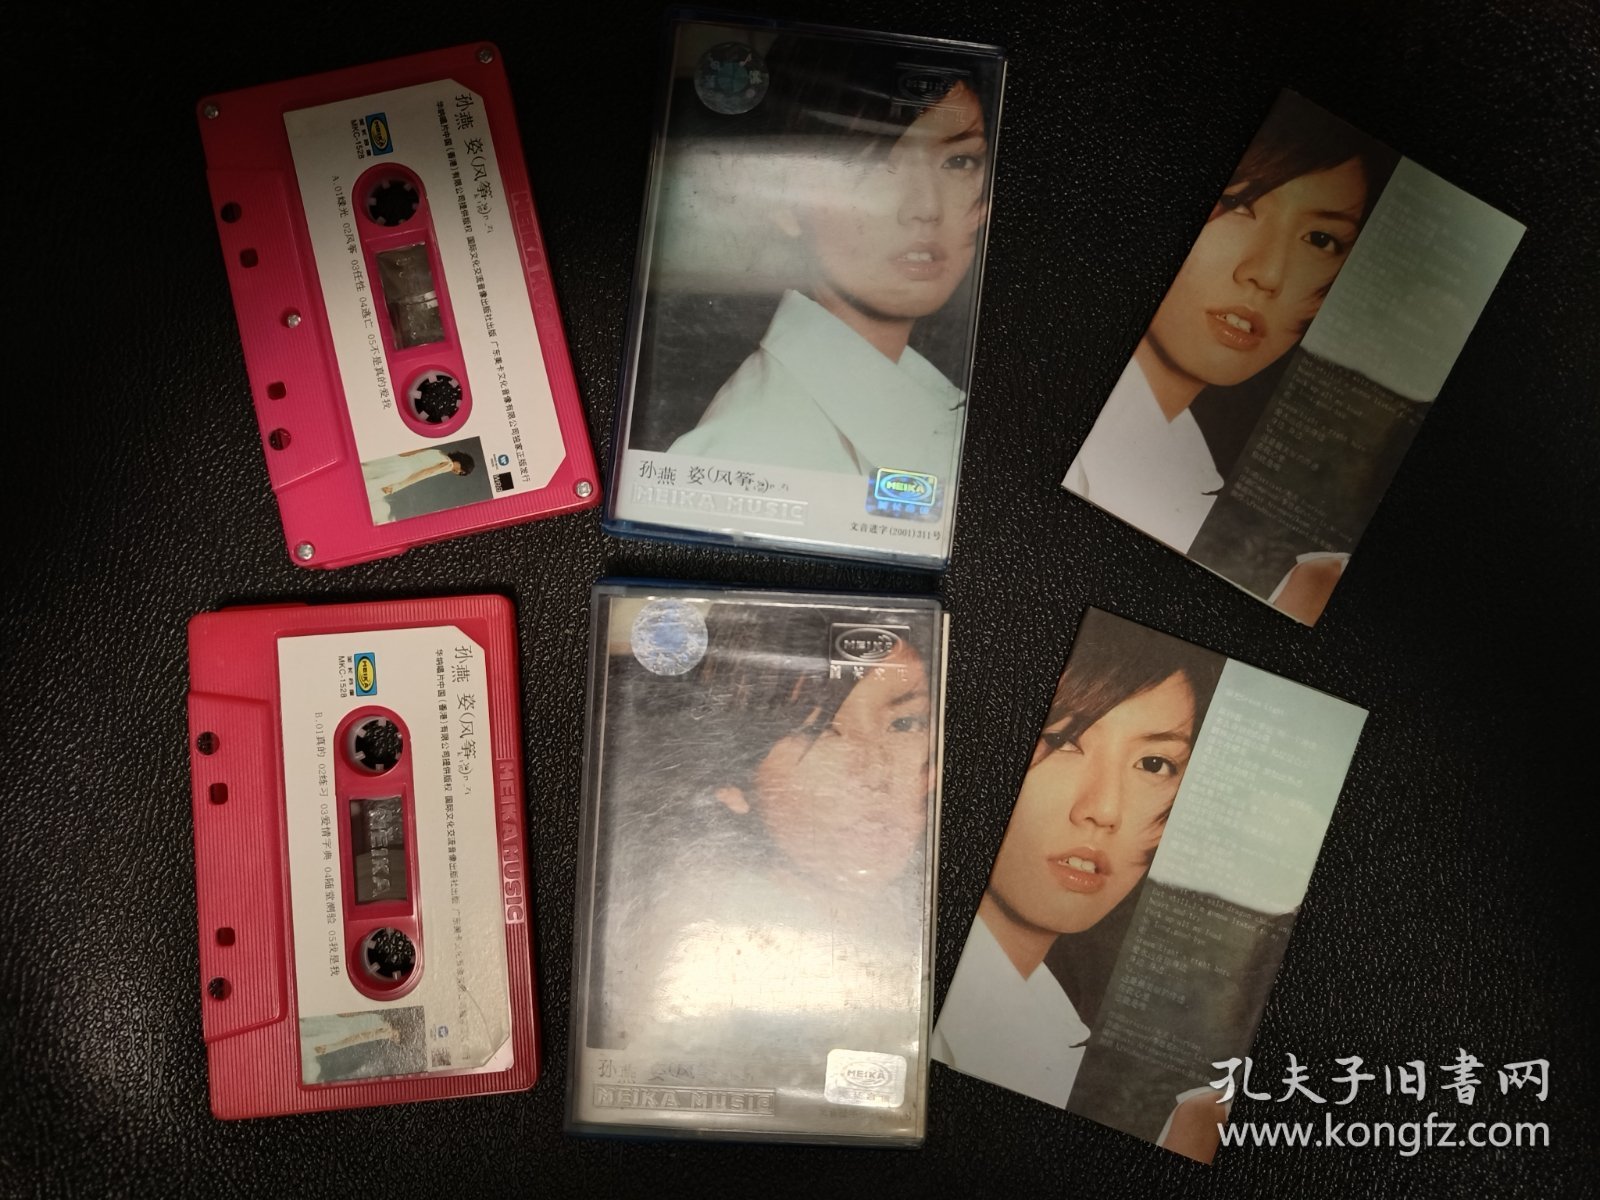 孙燕姿 风筝专辑 正版磁带 15/盘